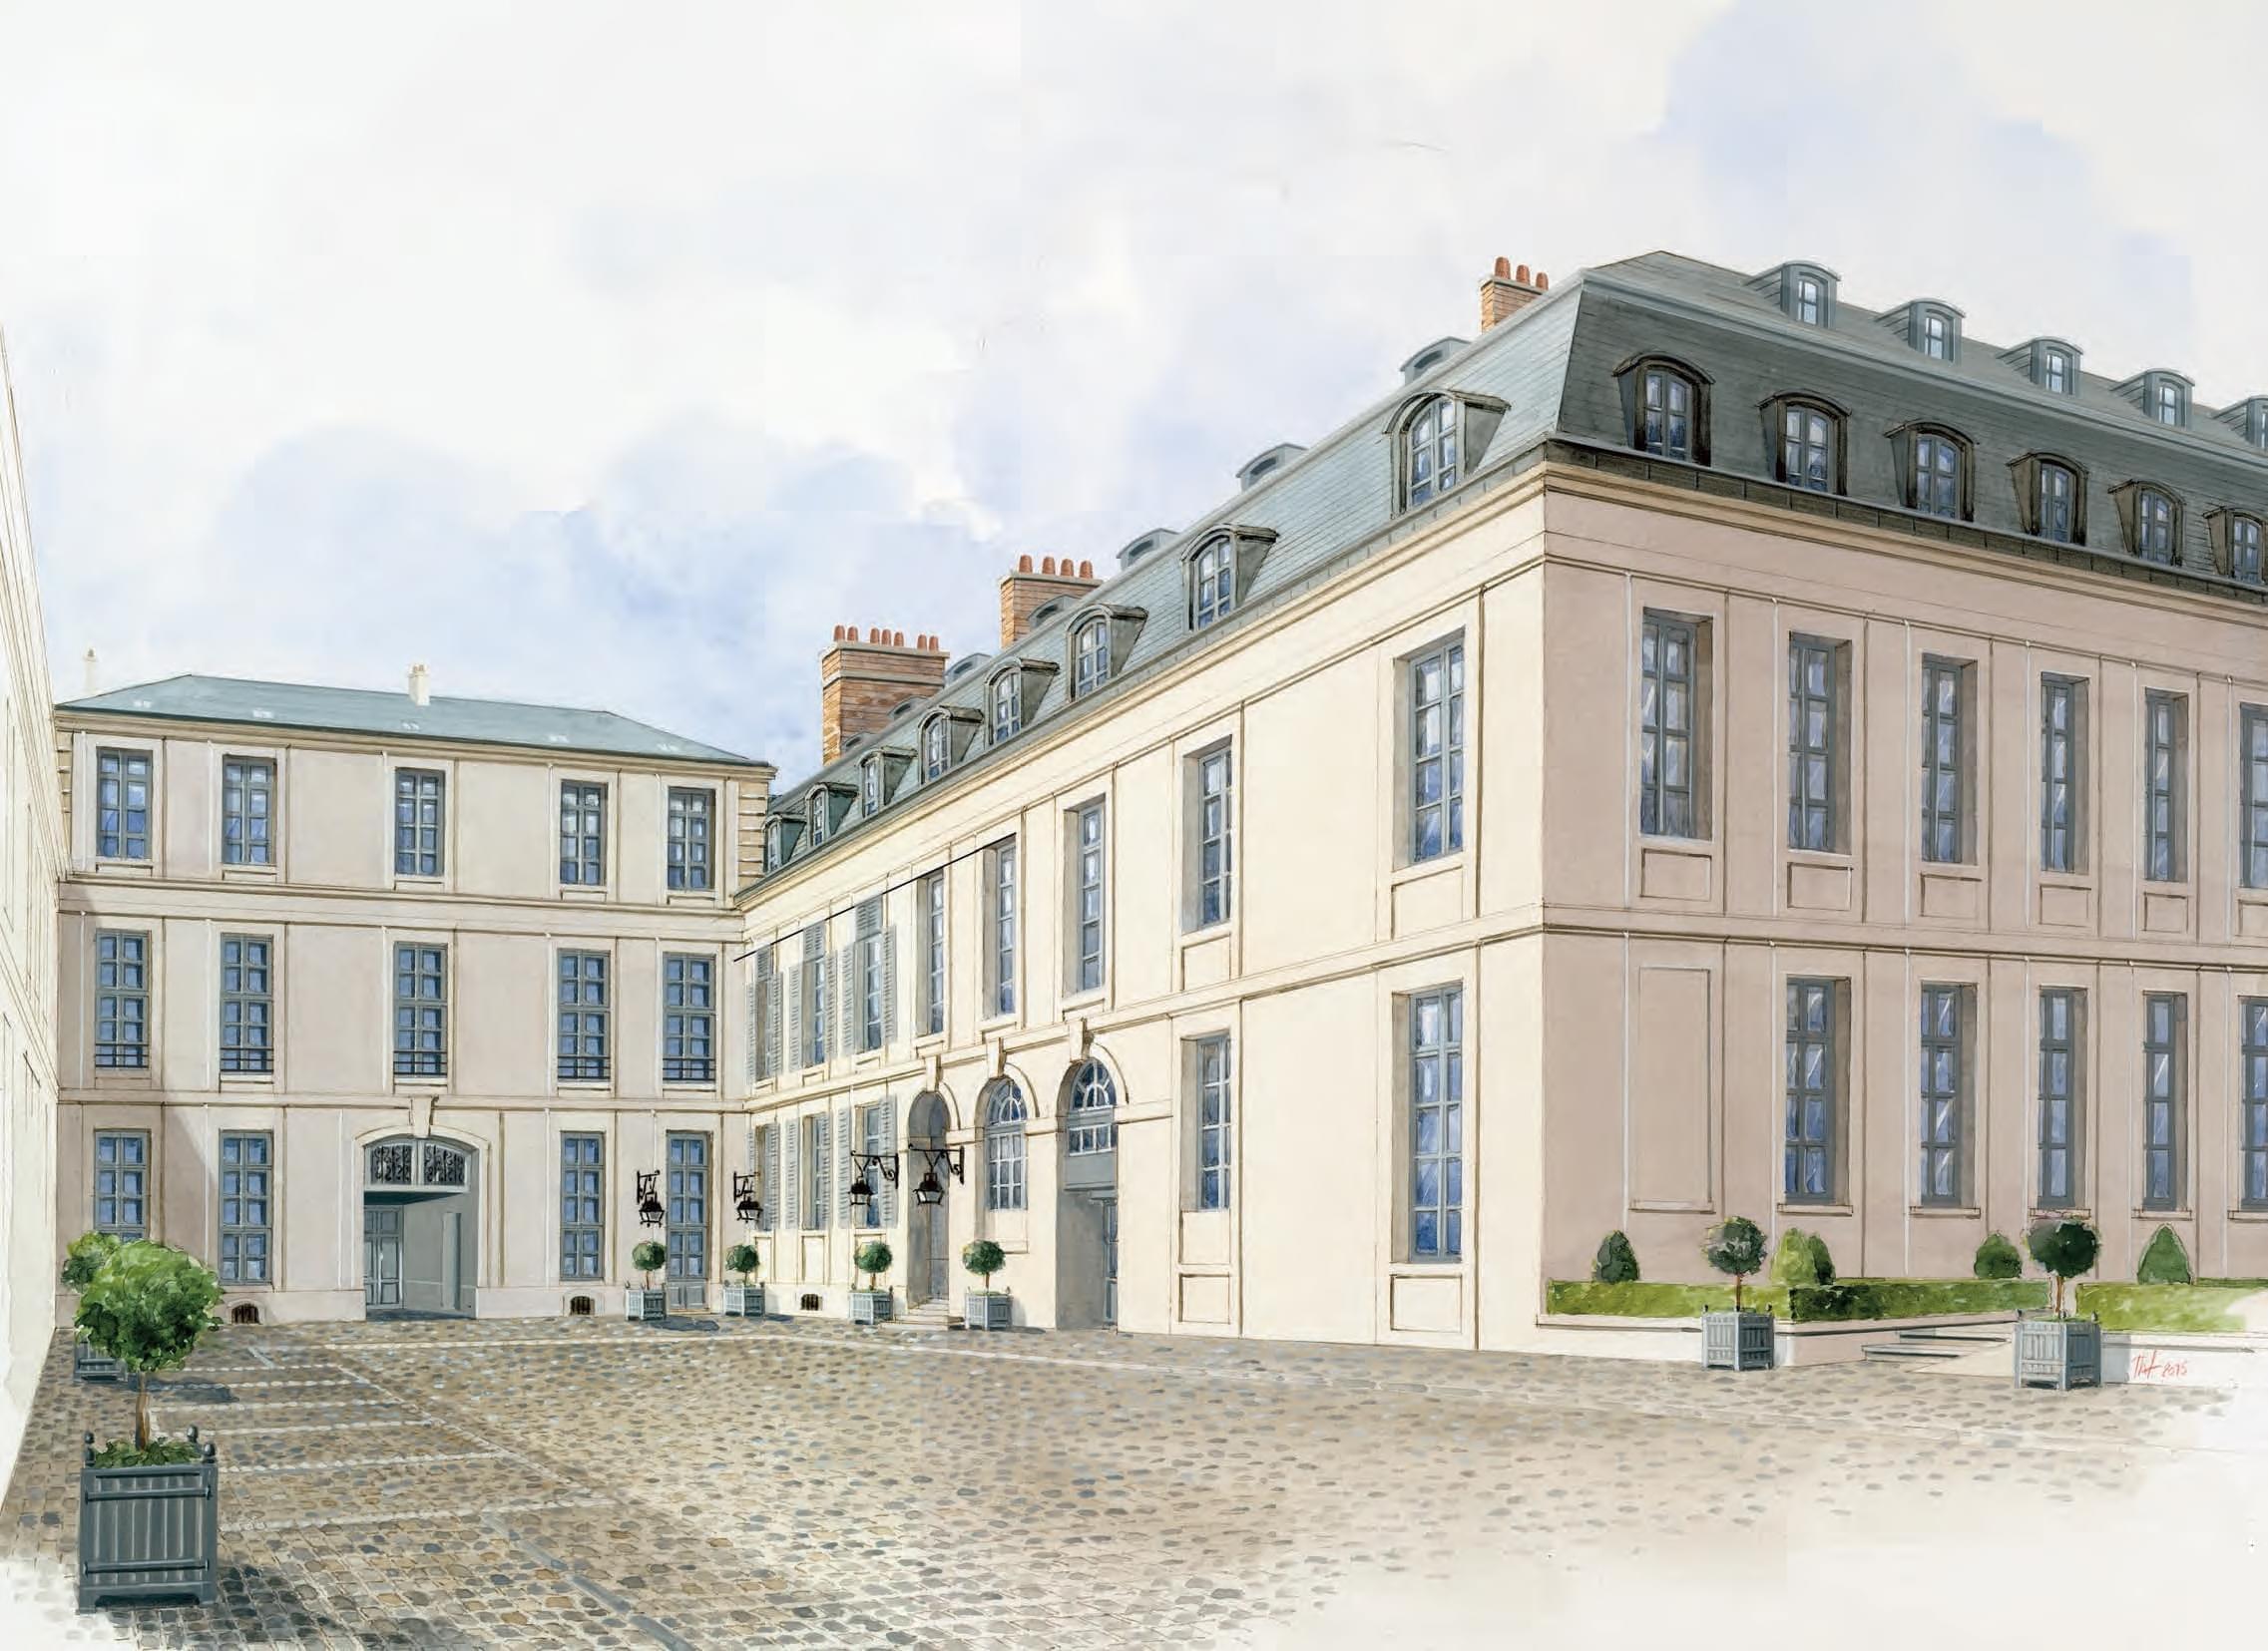 Résidence à Versailles Un hotel historique, Une adresse exceptionnel, Proche chateau de Versailles,